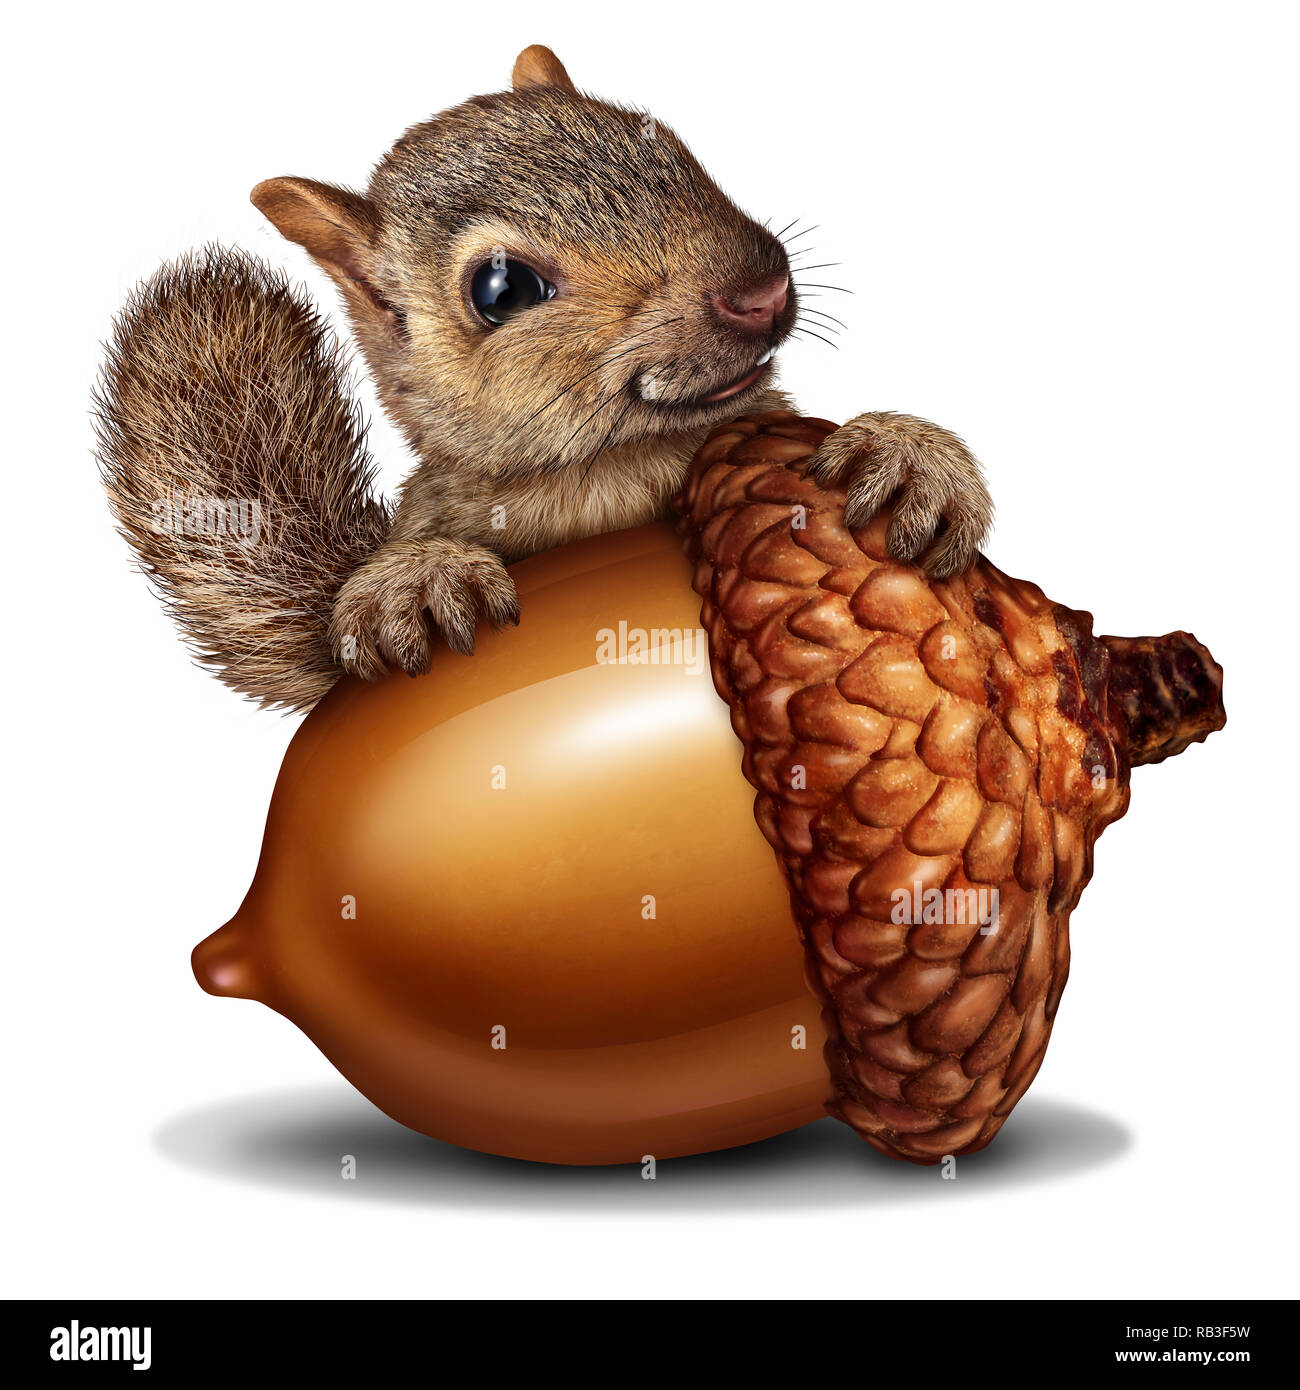 Funny squirrel sosteniendo un gigantesco árbol de bellota tuerca como riqueza o ricos metáfora para los negocios y el ahorro financiero en una ilustración 3D de estilo. Foto de stock